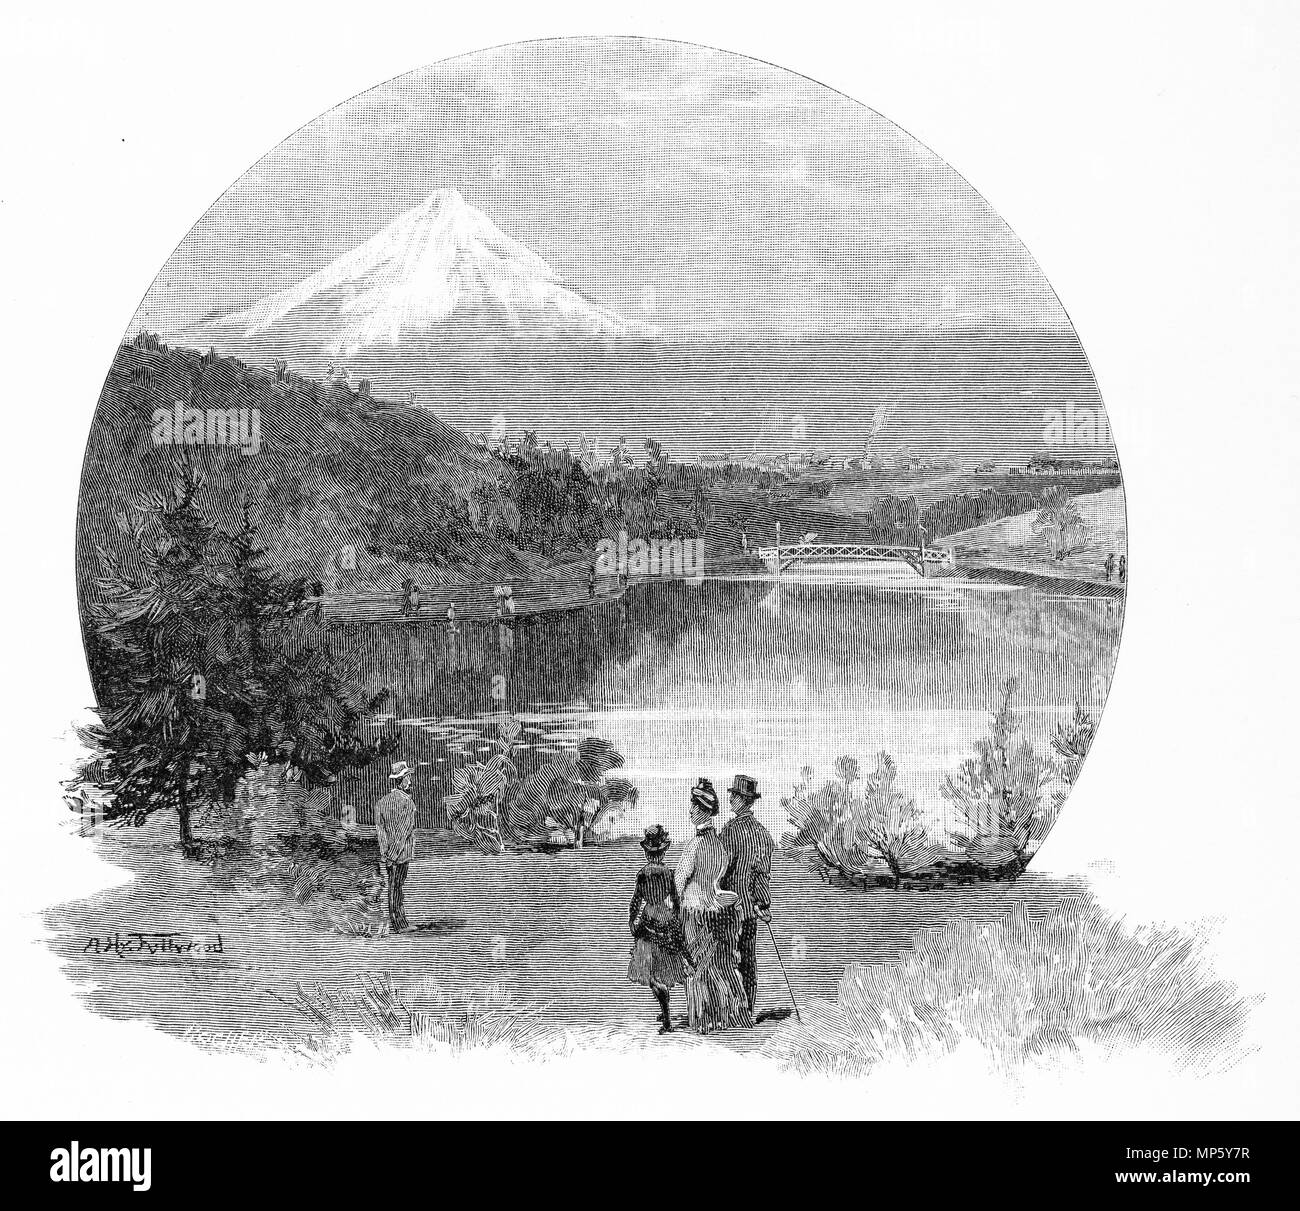 Gravure des aires de loisir, New Plymouth, Nouvelle-Zélande. À partir de l'Atlas pittoresque d'Australasie Vol 3, 1886 Banque D'Images